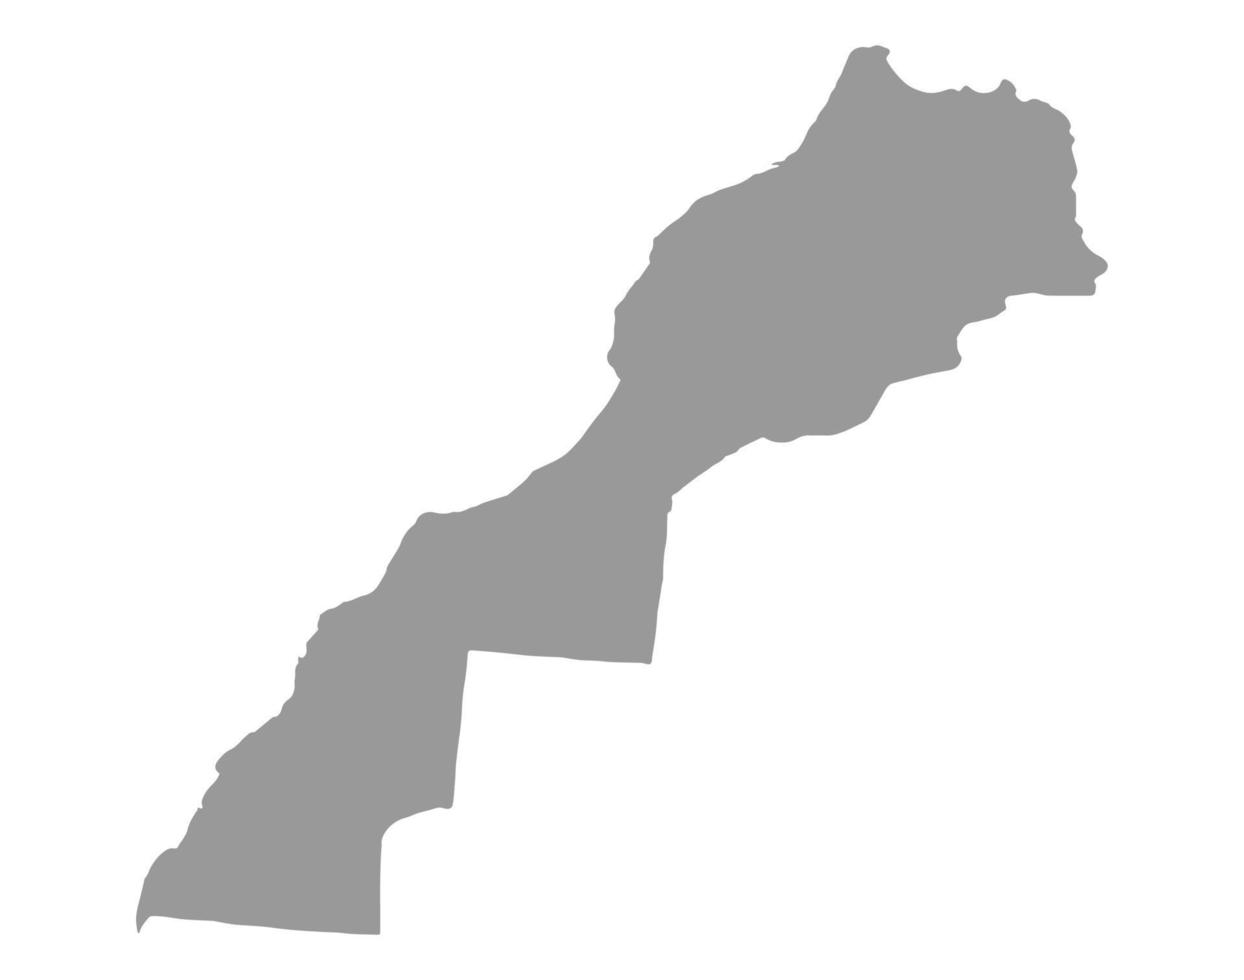 mapa de marruecos en png o fondo transparente. símbolo de marruecos. ilustración vectorial vector